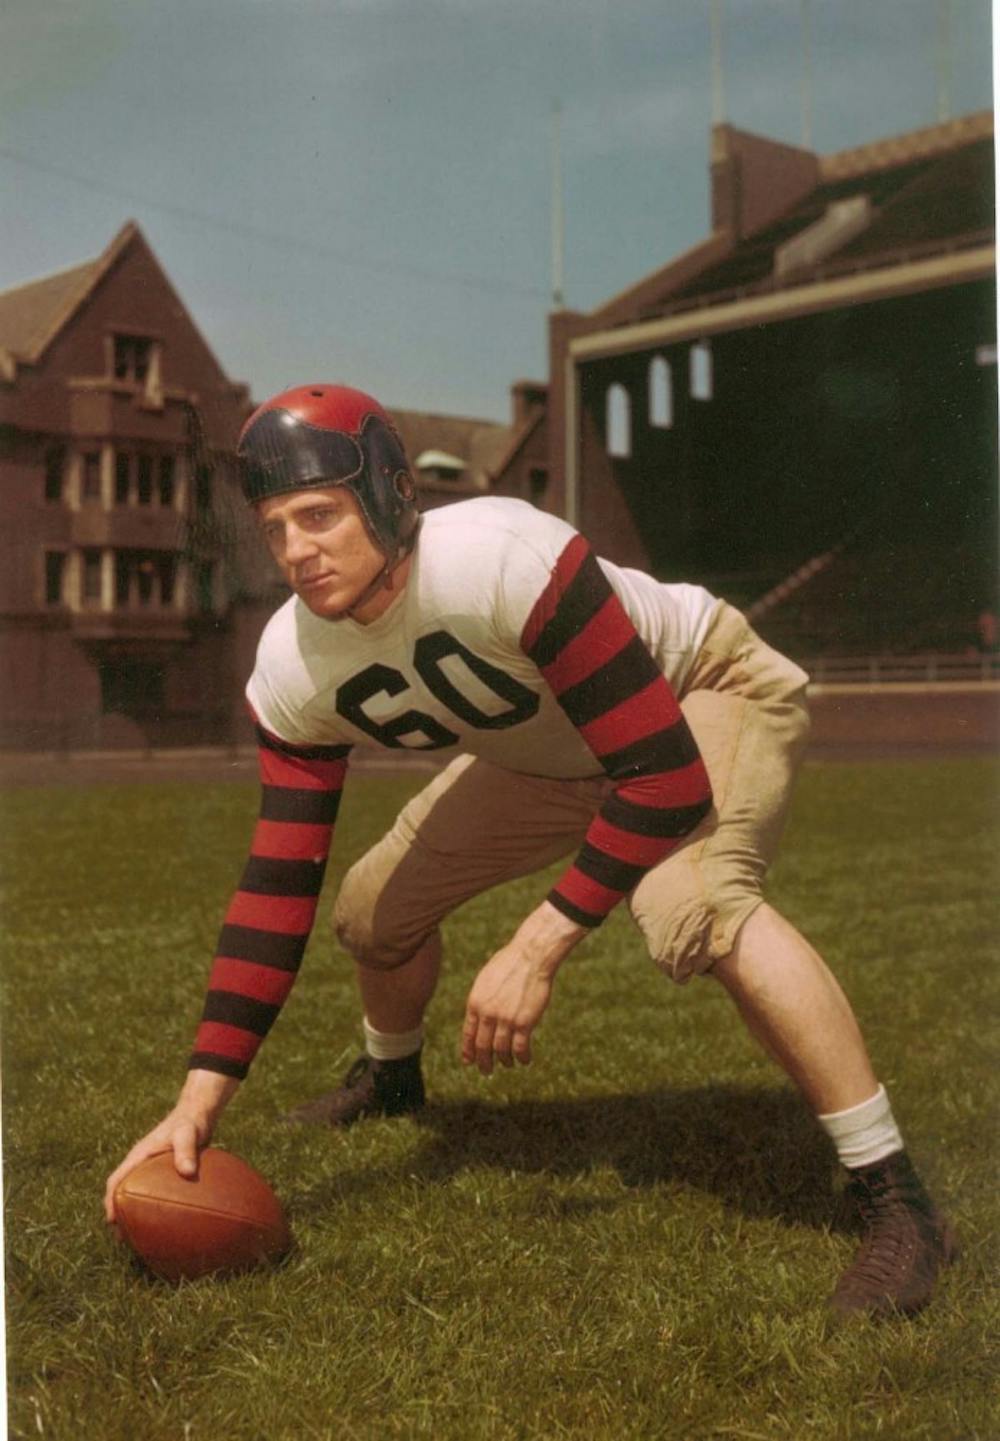 Penn football legend Chuck Bednarik dies at 89